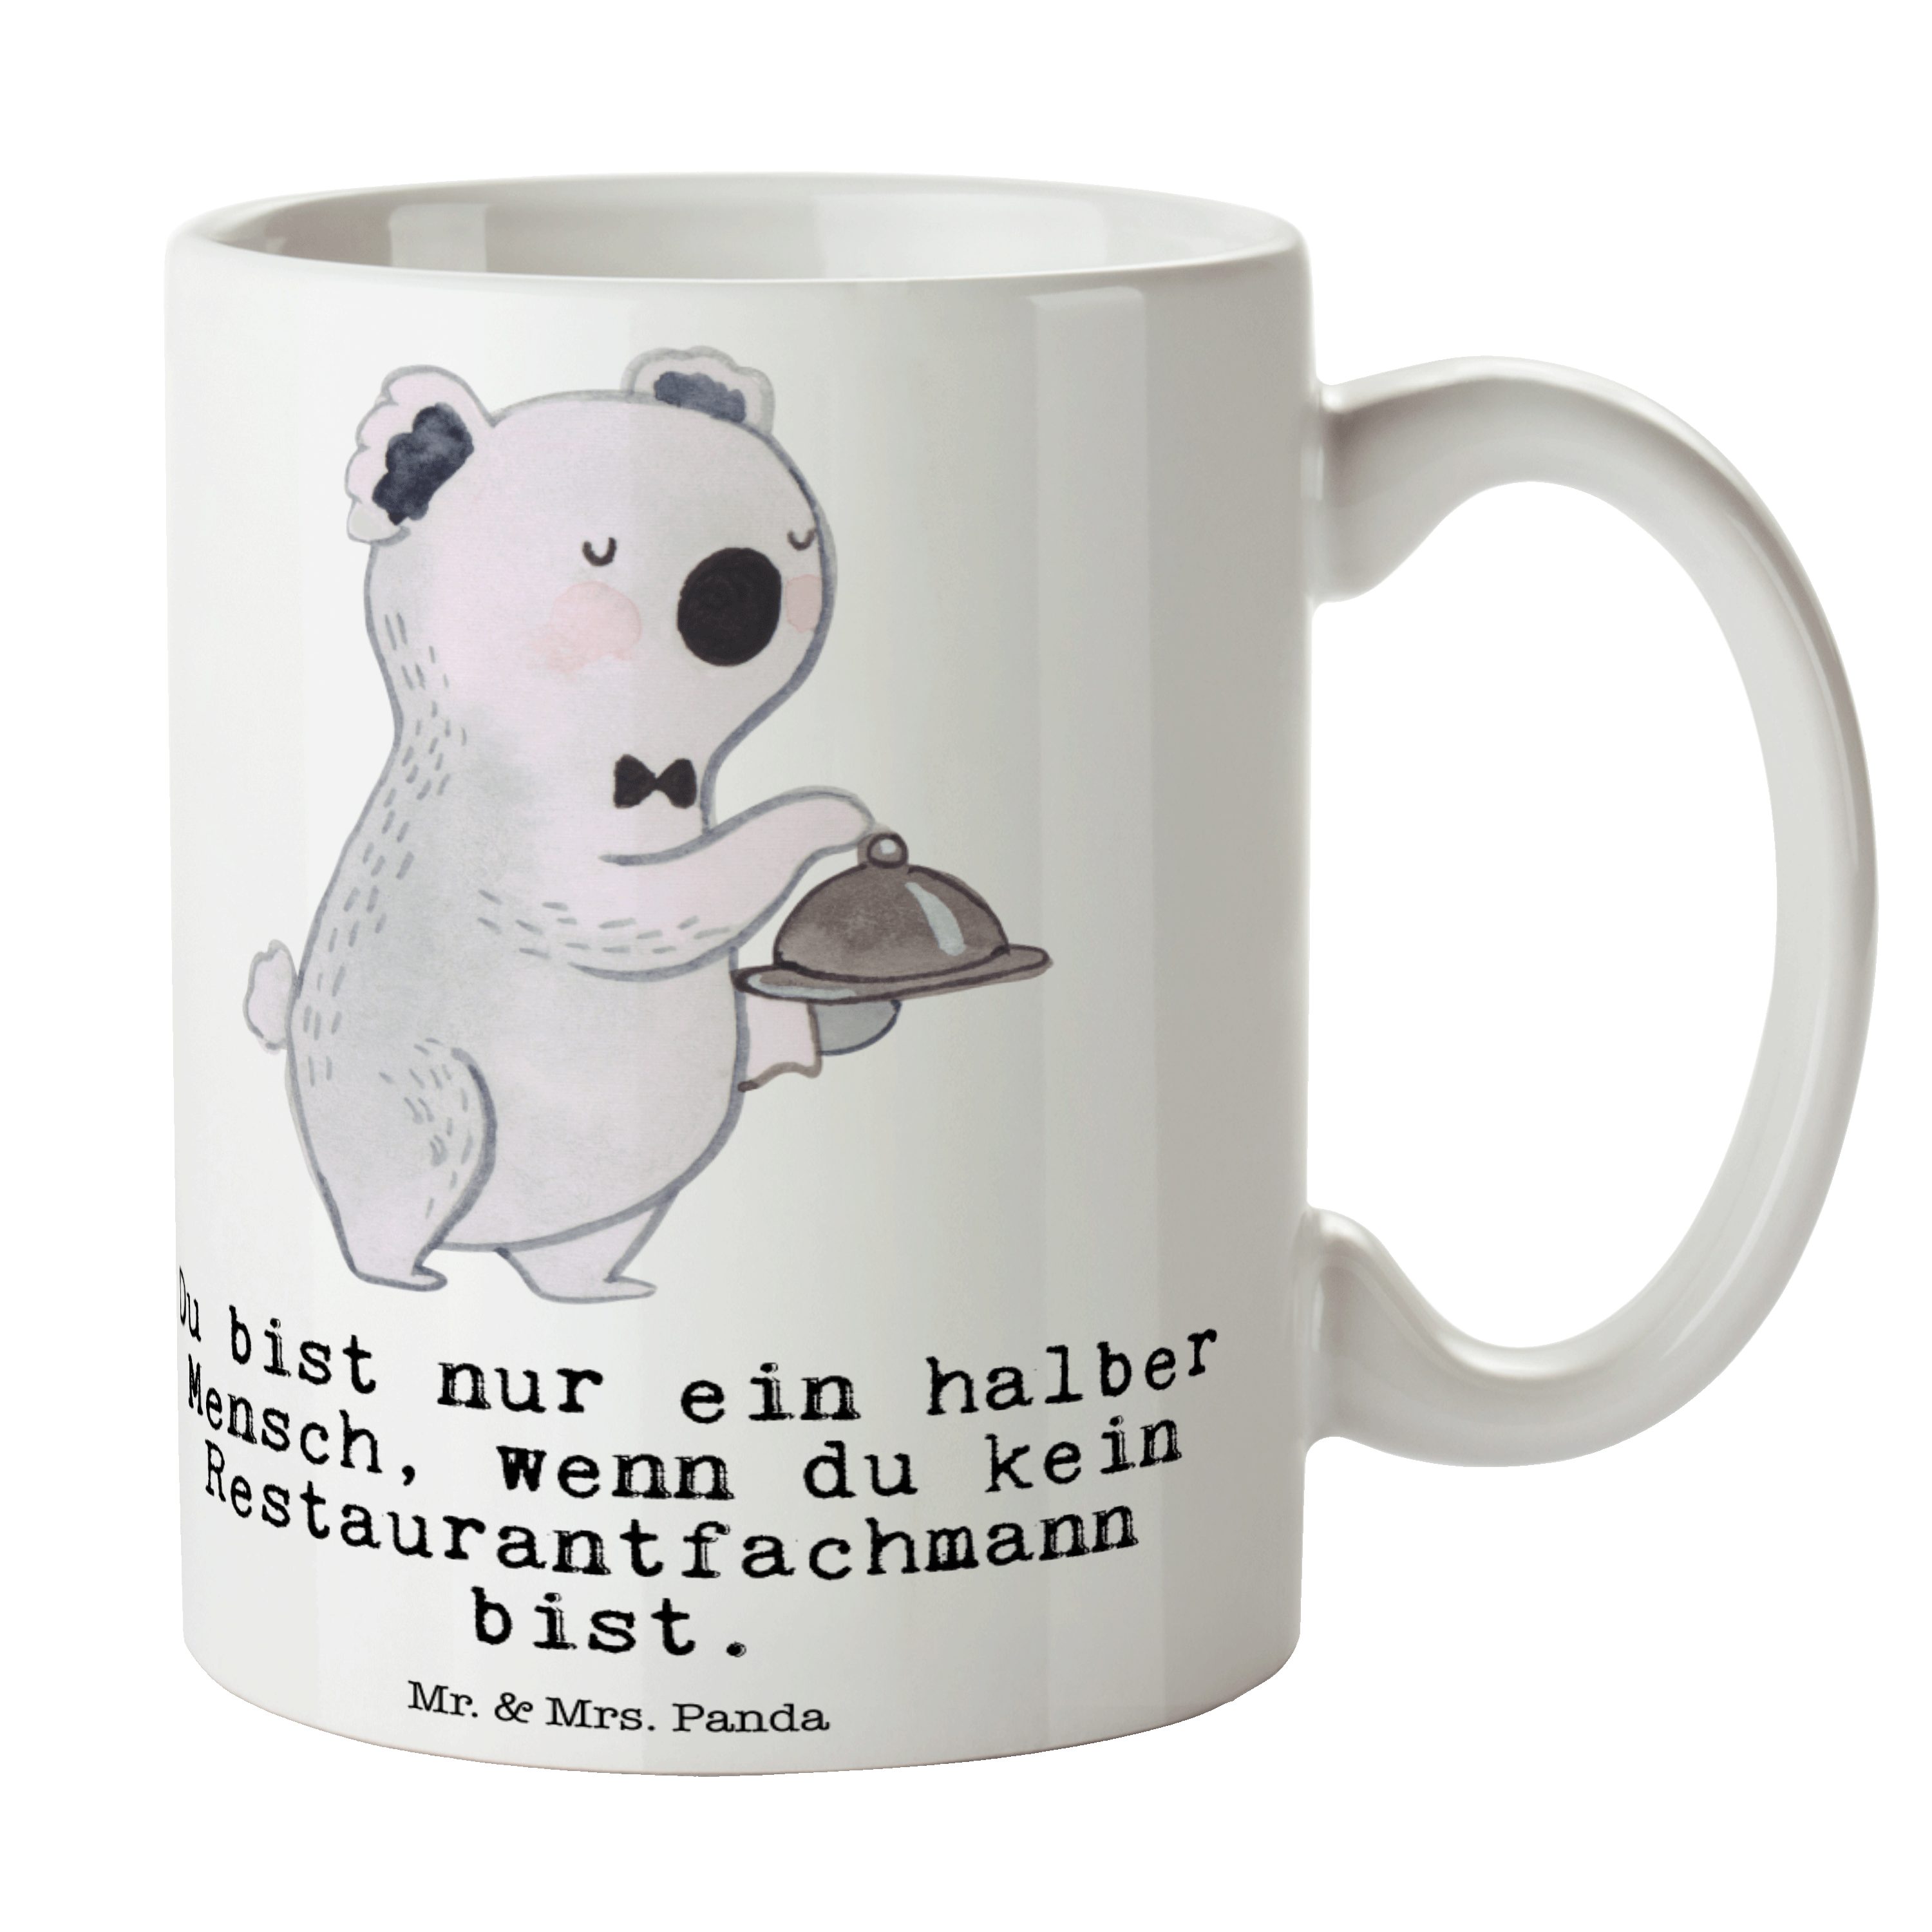 Mr. & Mrs. Panda Tasse Restaurantfachmann mit Herz - Weiß - Geschenk, Büro Tasse, Schenken, Keramik